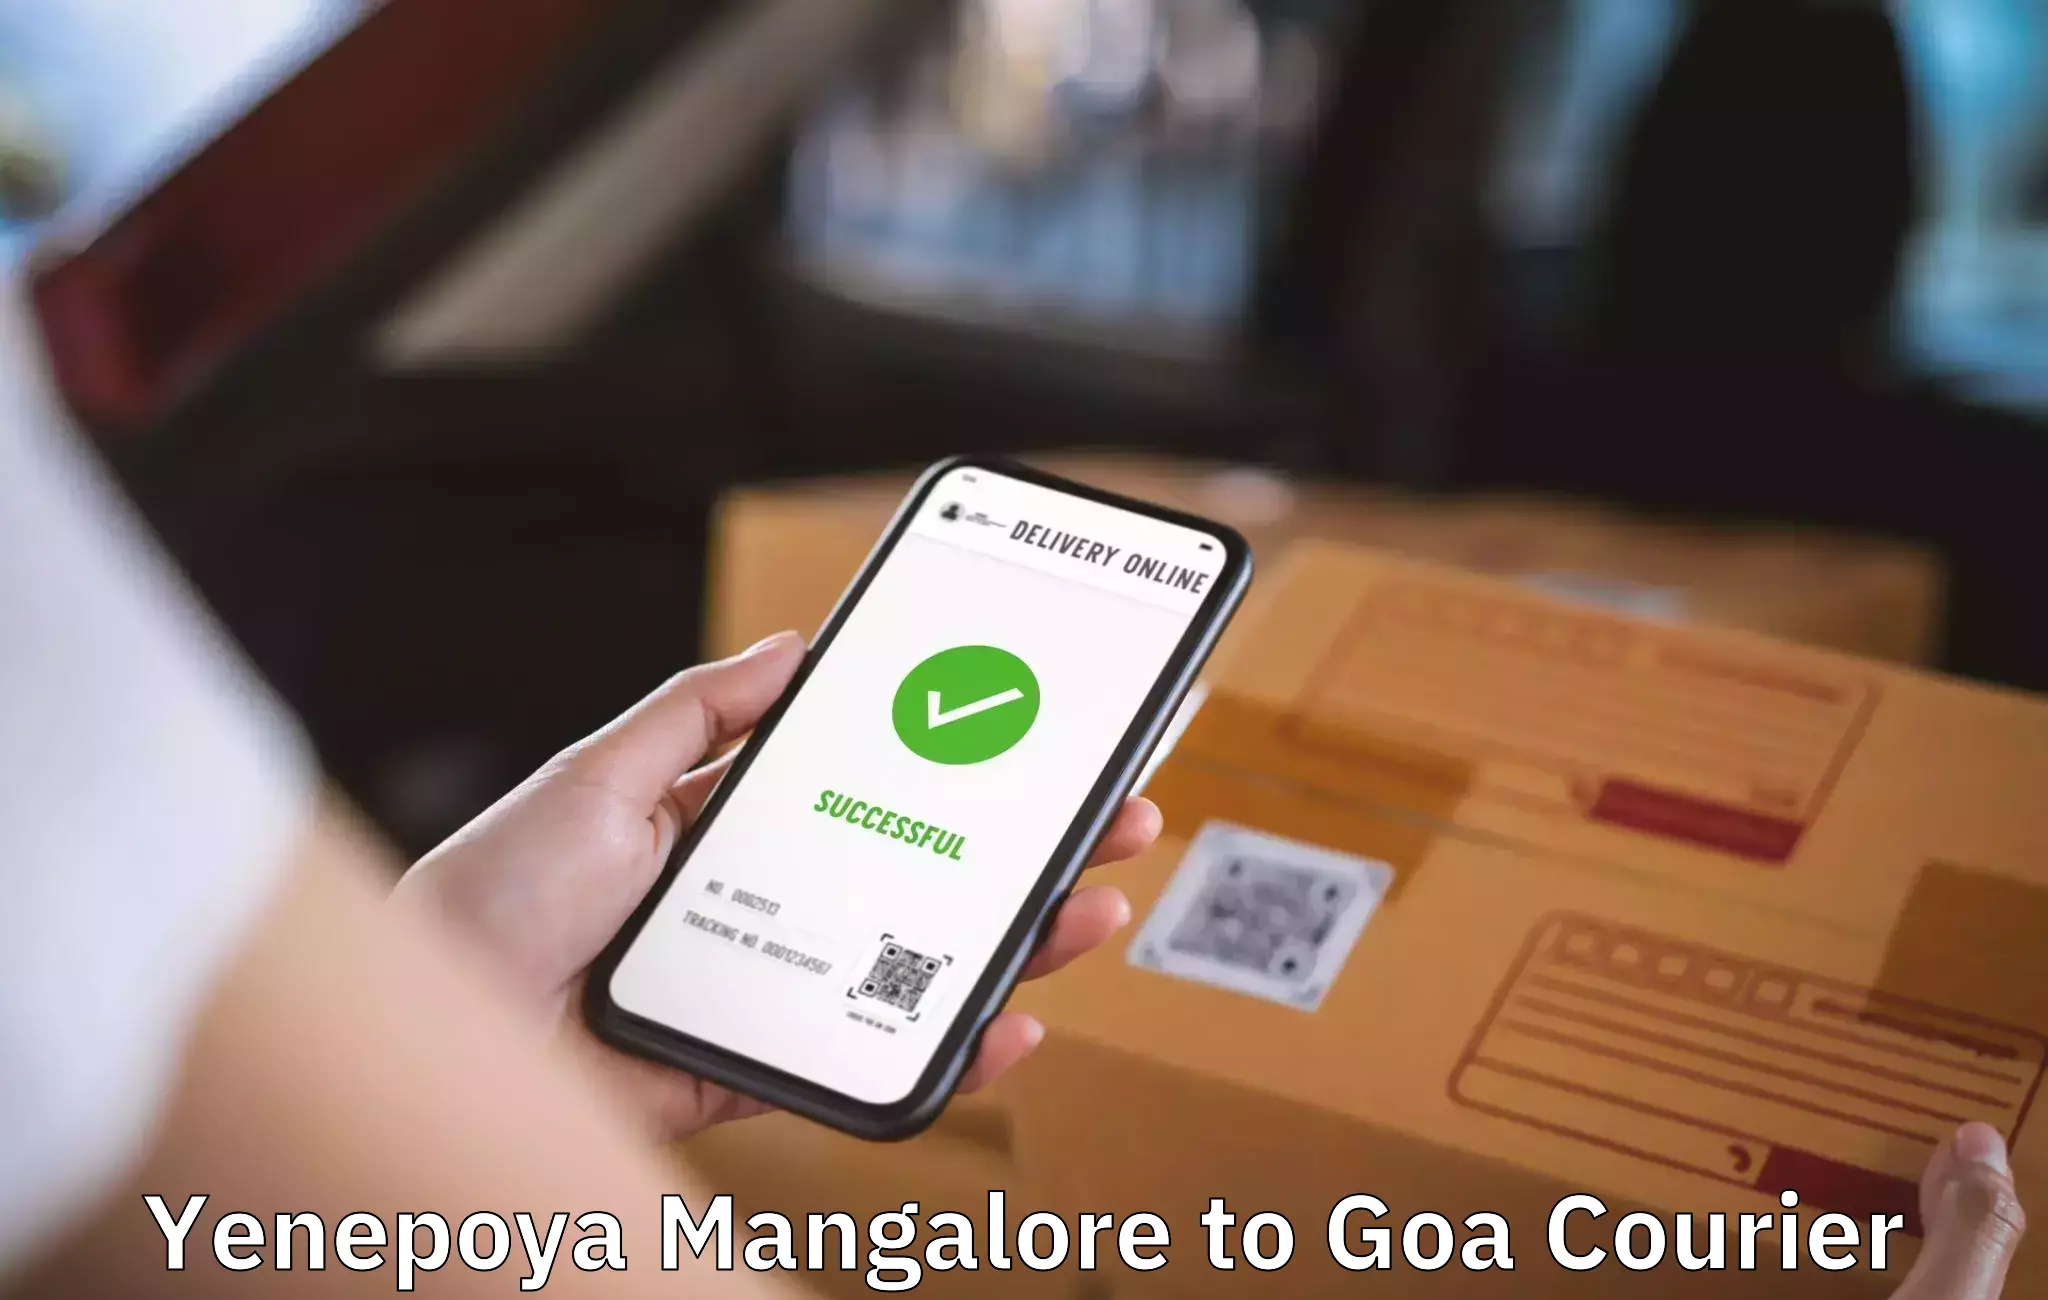 Efficient packing and moving Yenepoya Mangalore to NIT Goa